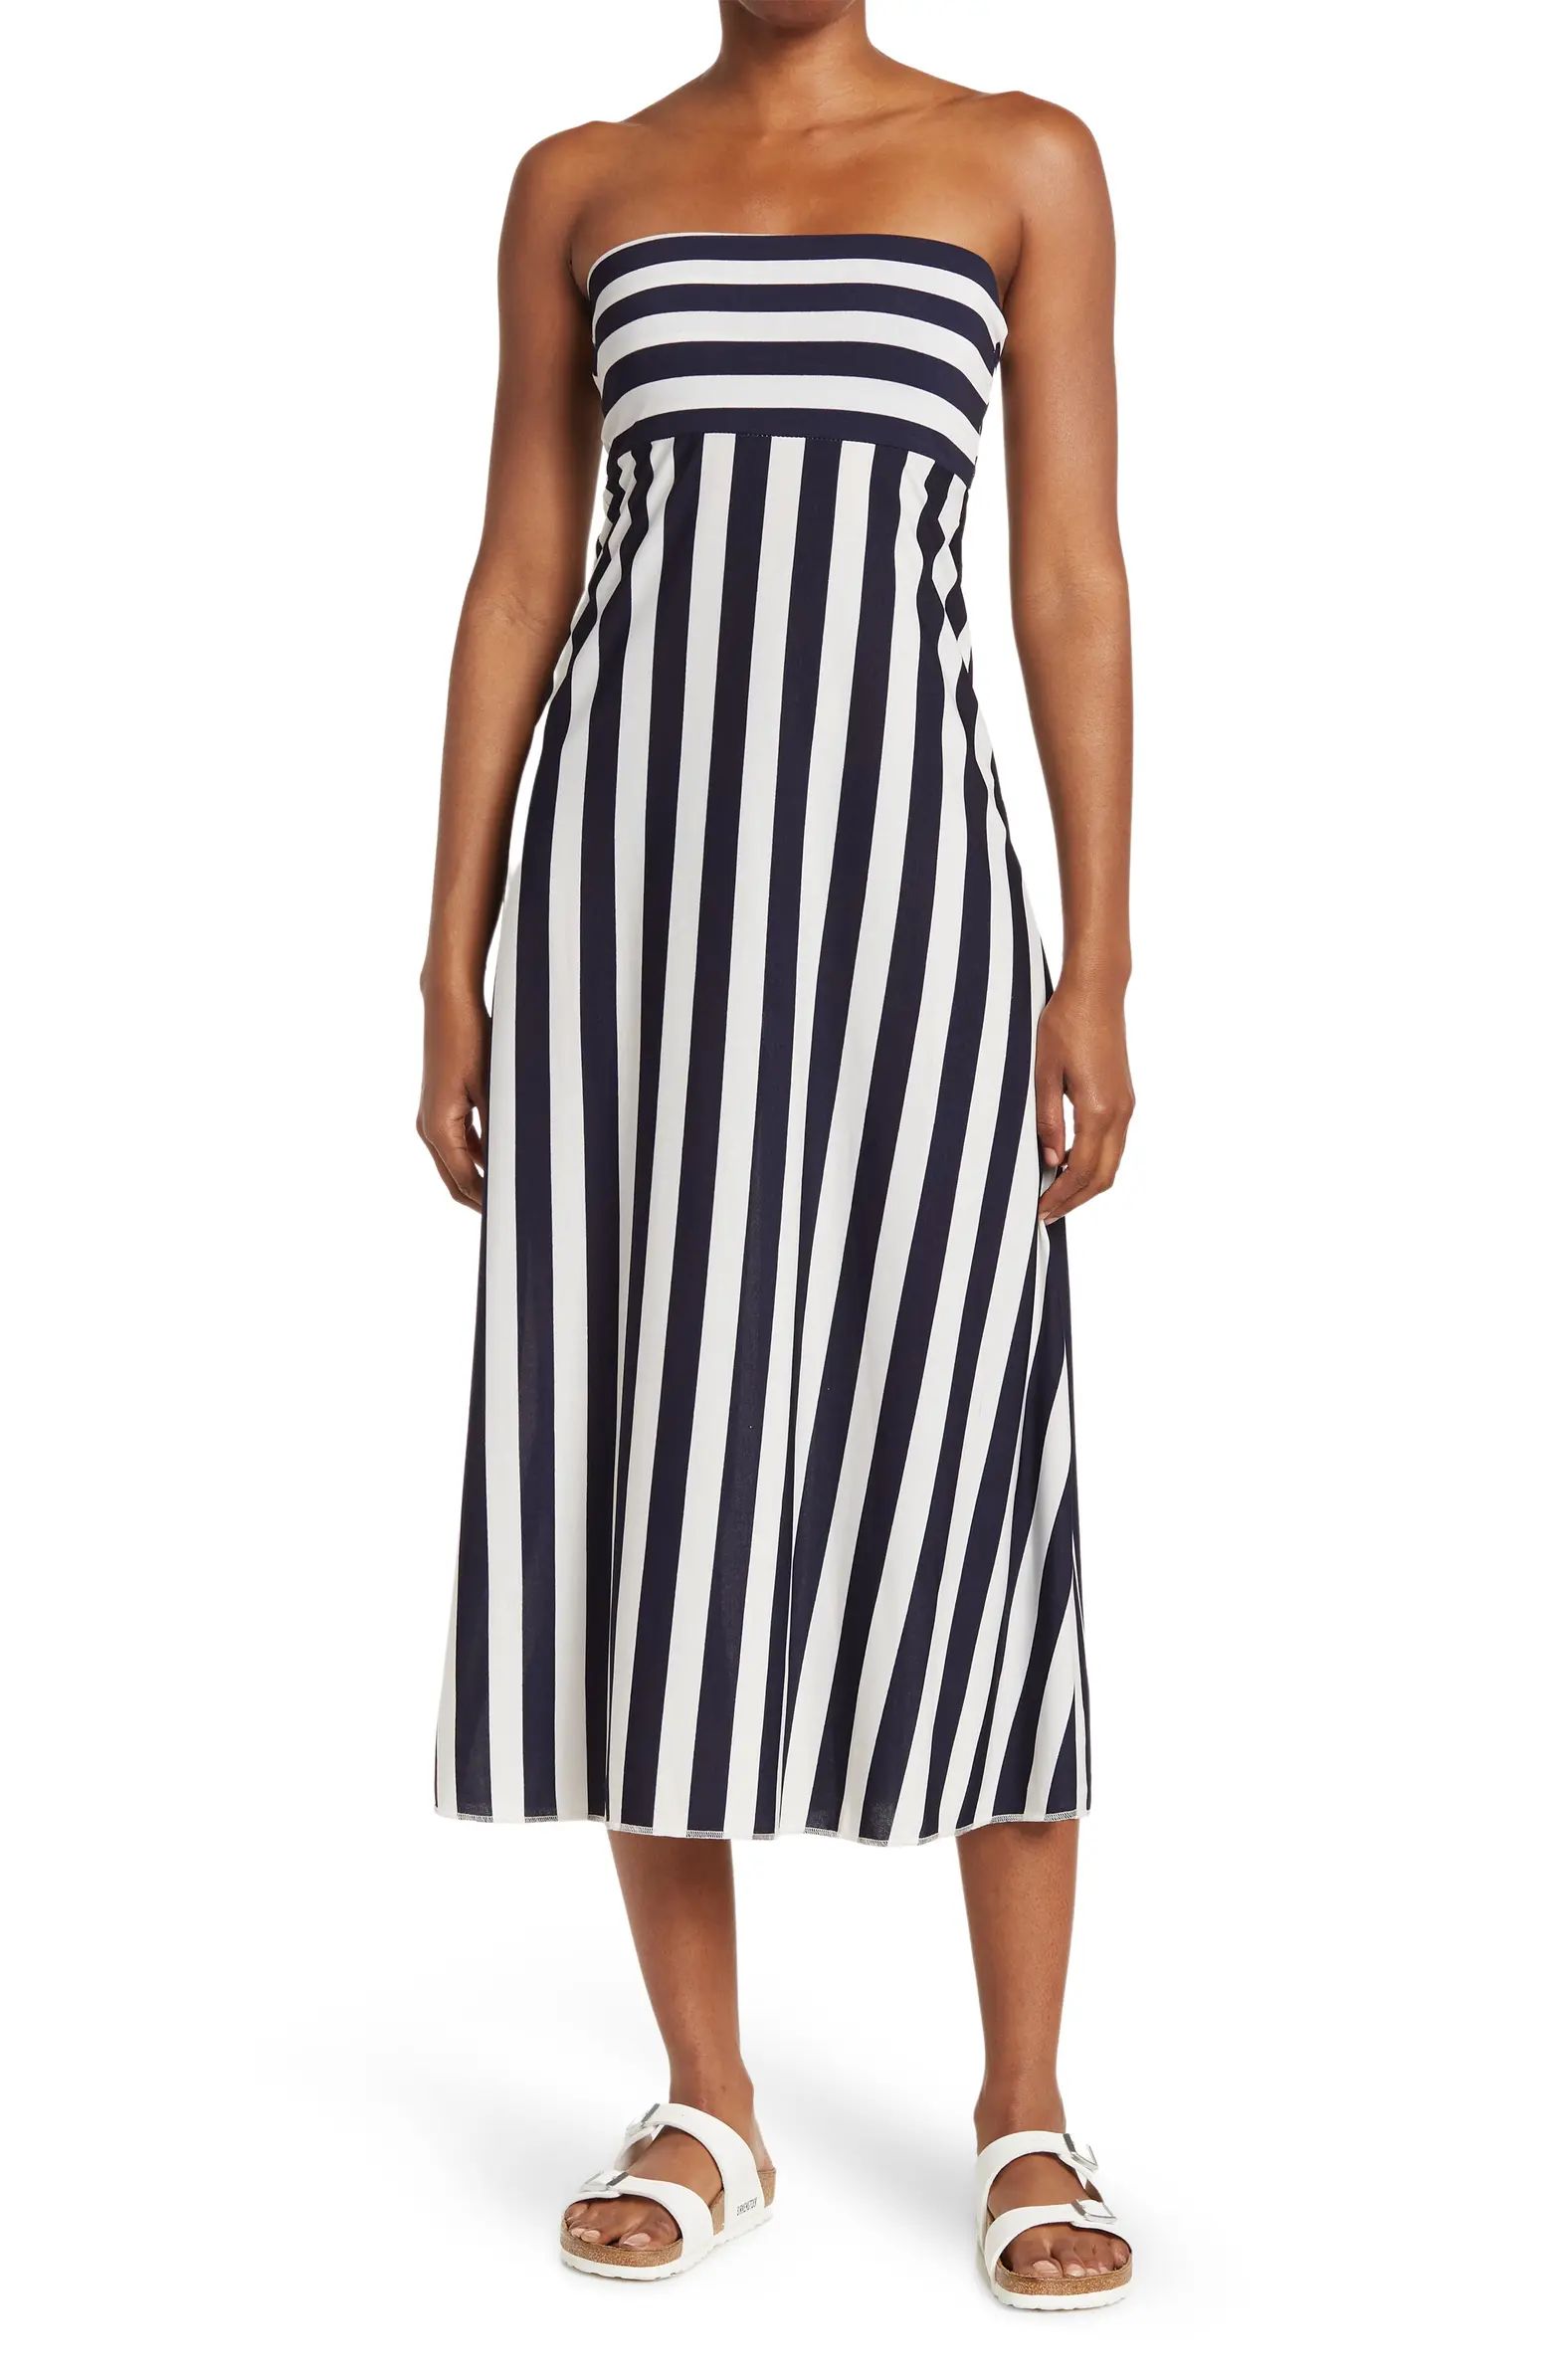 Stripe Print Convertible Dress/Skirt | Nordstrom Rack